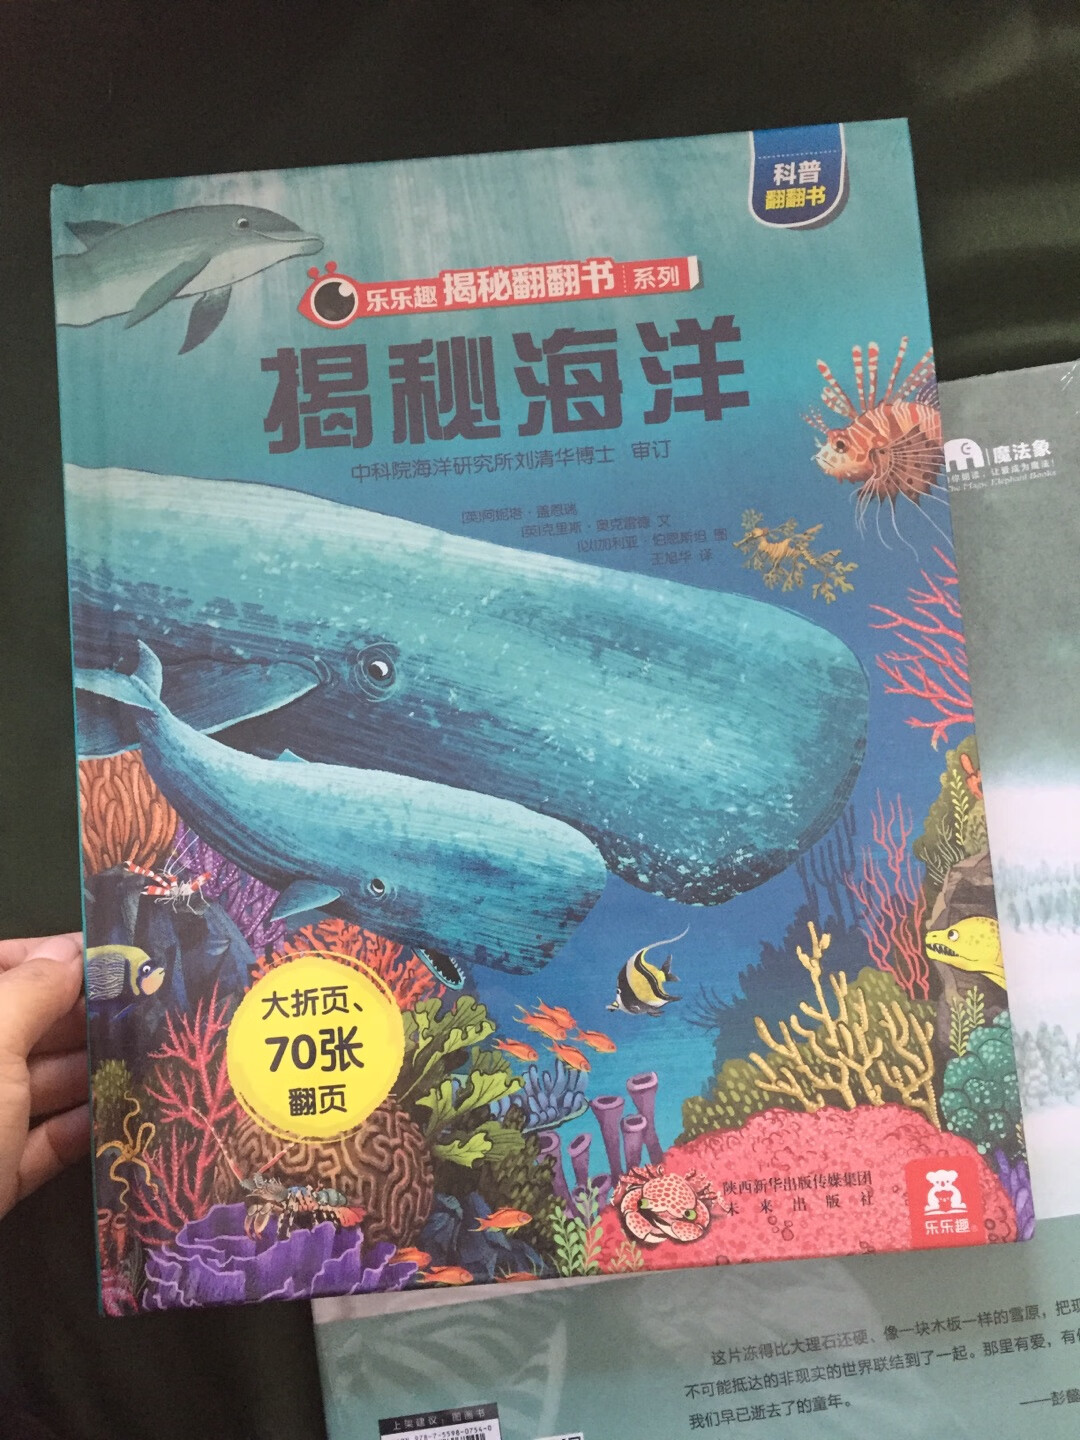 孩子对海洋生物很感兴趣，所以选了些这方面的科普书。买书折扣真心不错，家里的书基本都是买的。